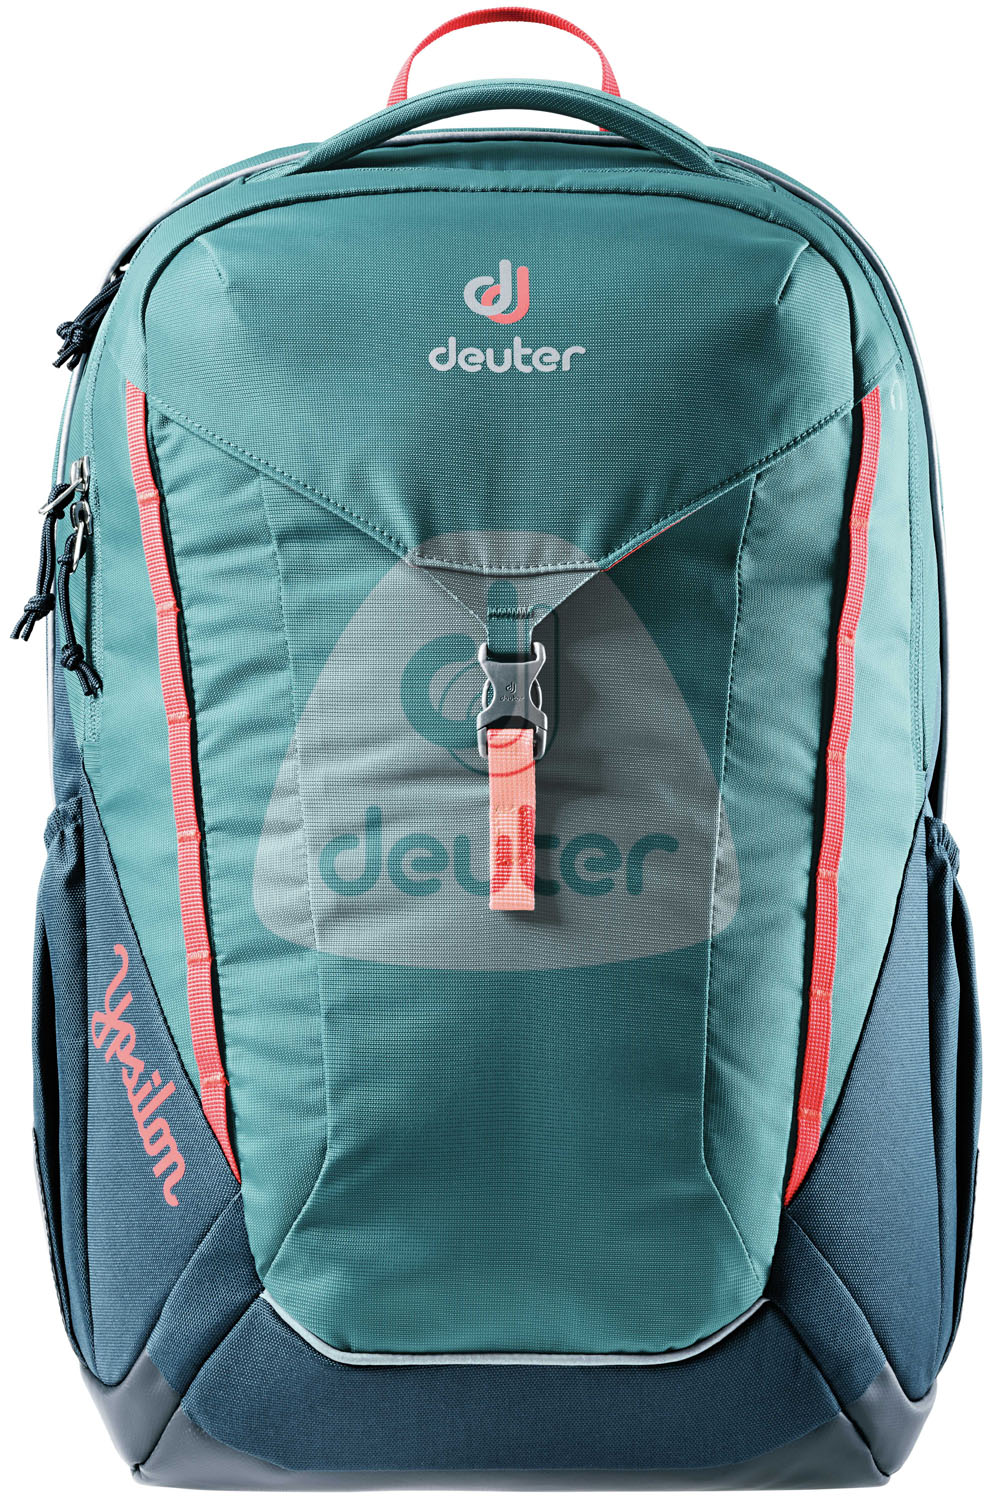 Deuter School Ypsilon Schulrucksack | jetzt online kaufen auf Koffer.de ✓